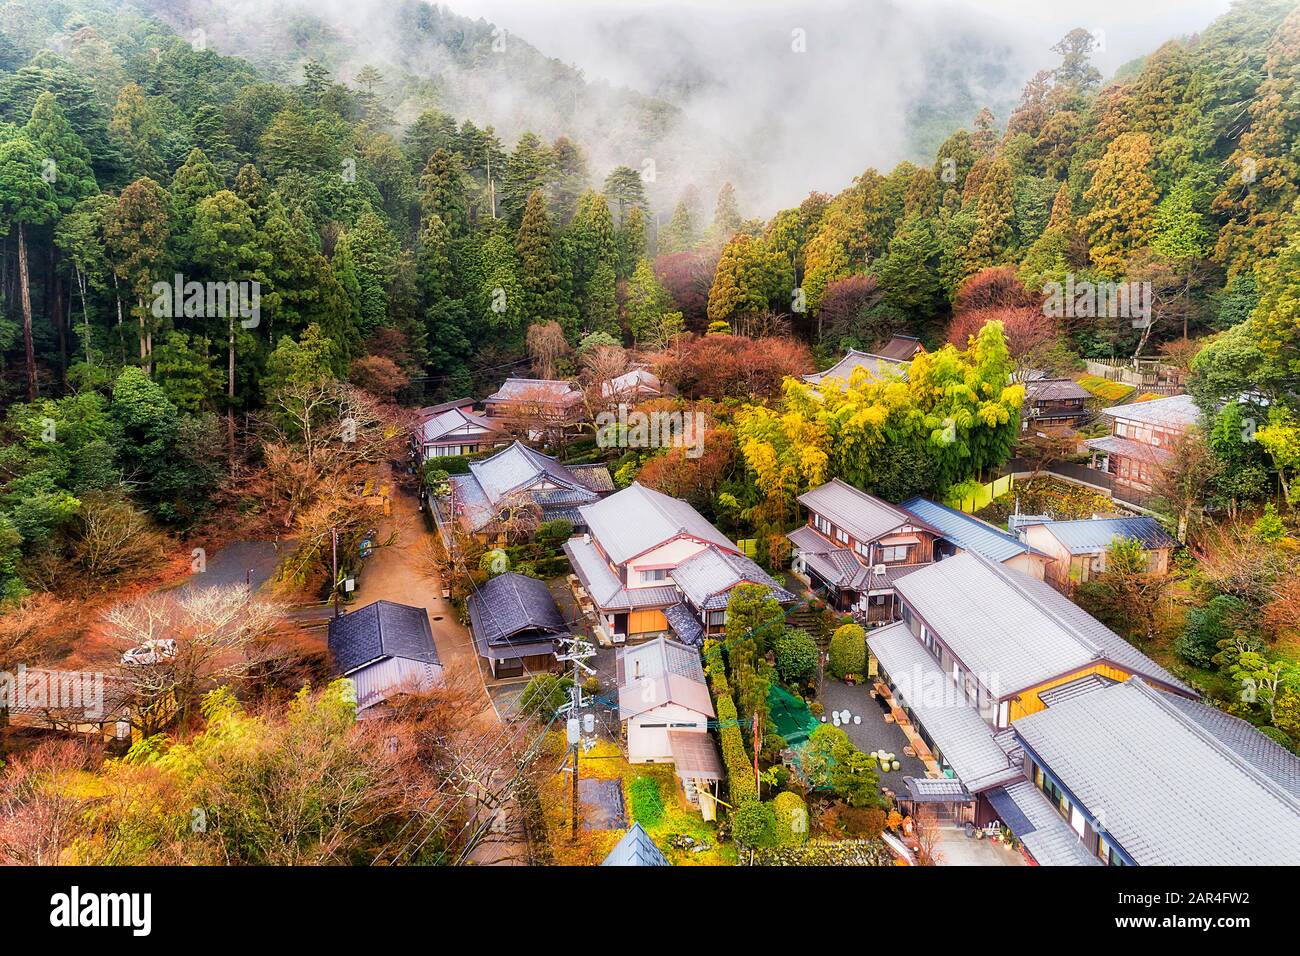 Ancien temple Bhuddiste profond dans la forêt de pins du Japon près de Kyoto - célèbre vallée d'Ohara avec des sources chaudes naturelles et des onsens traditionnels. Banque D'Images